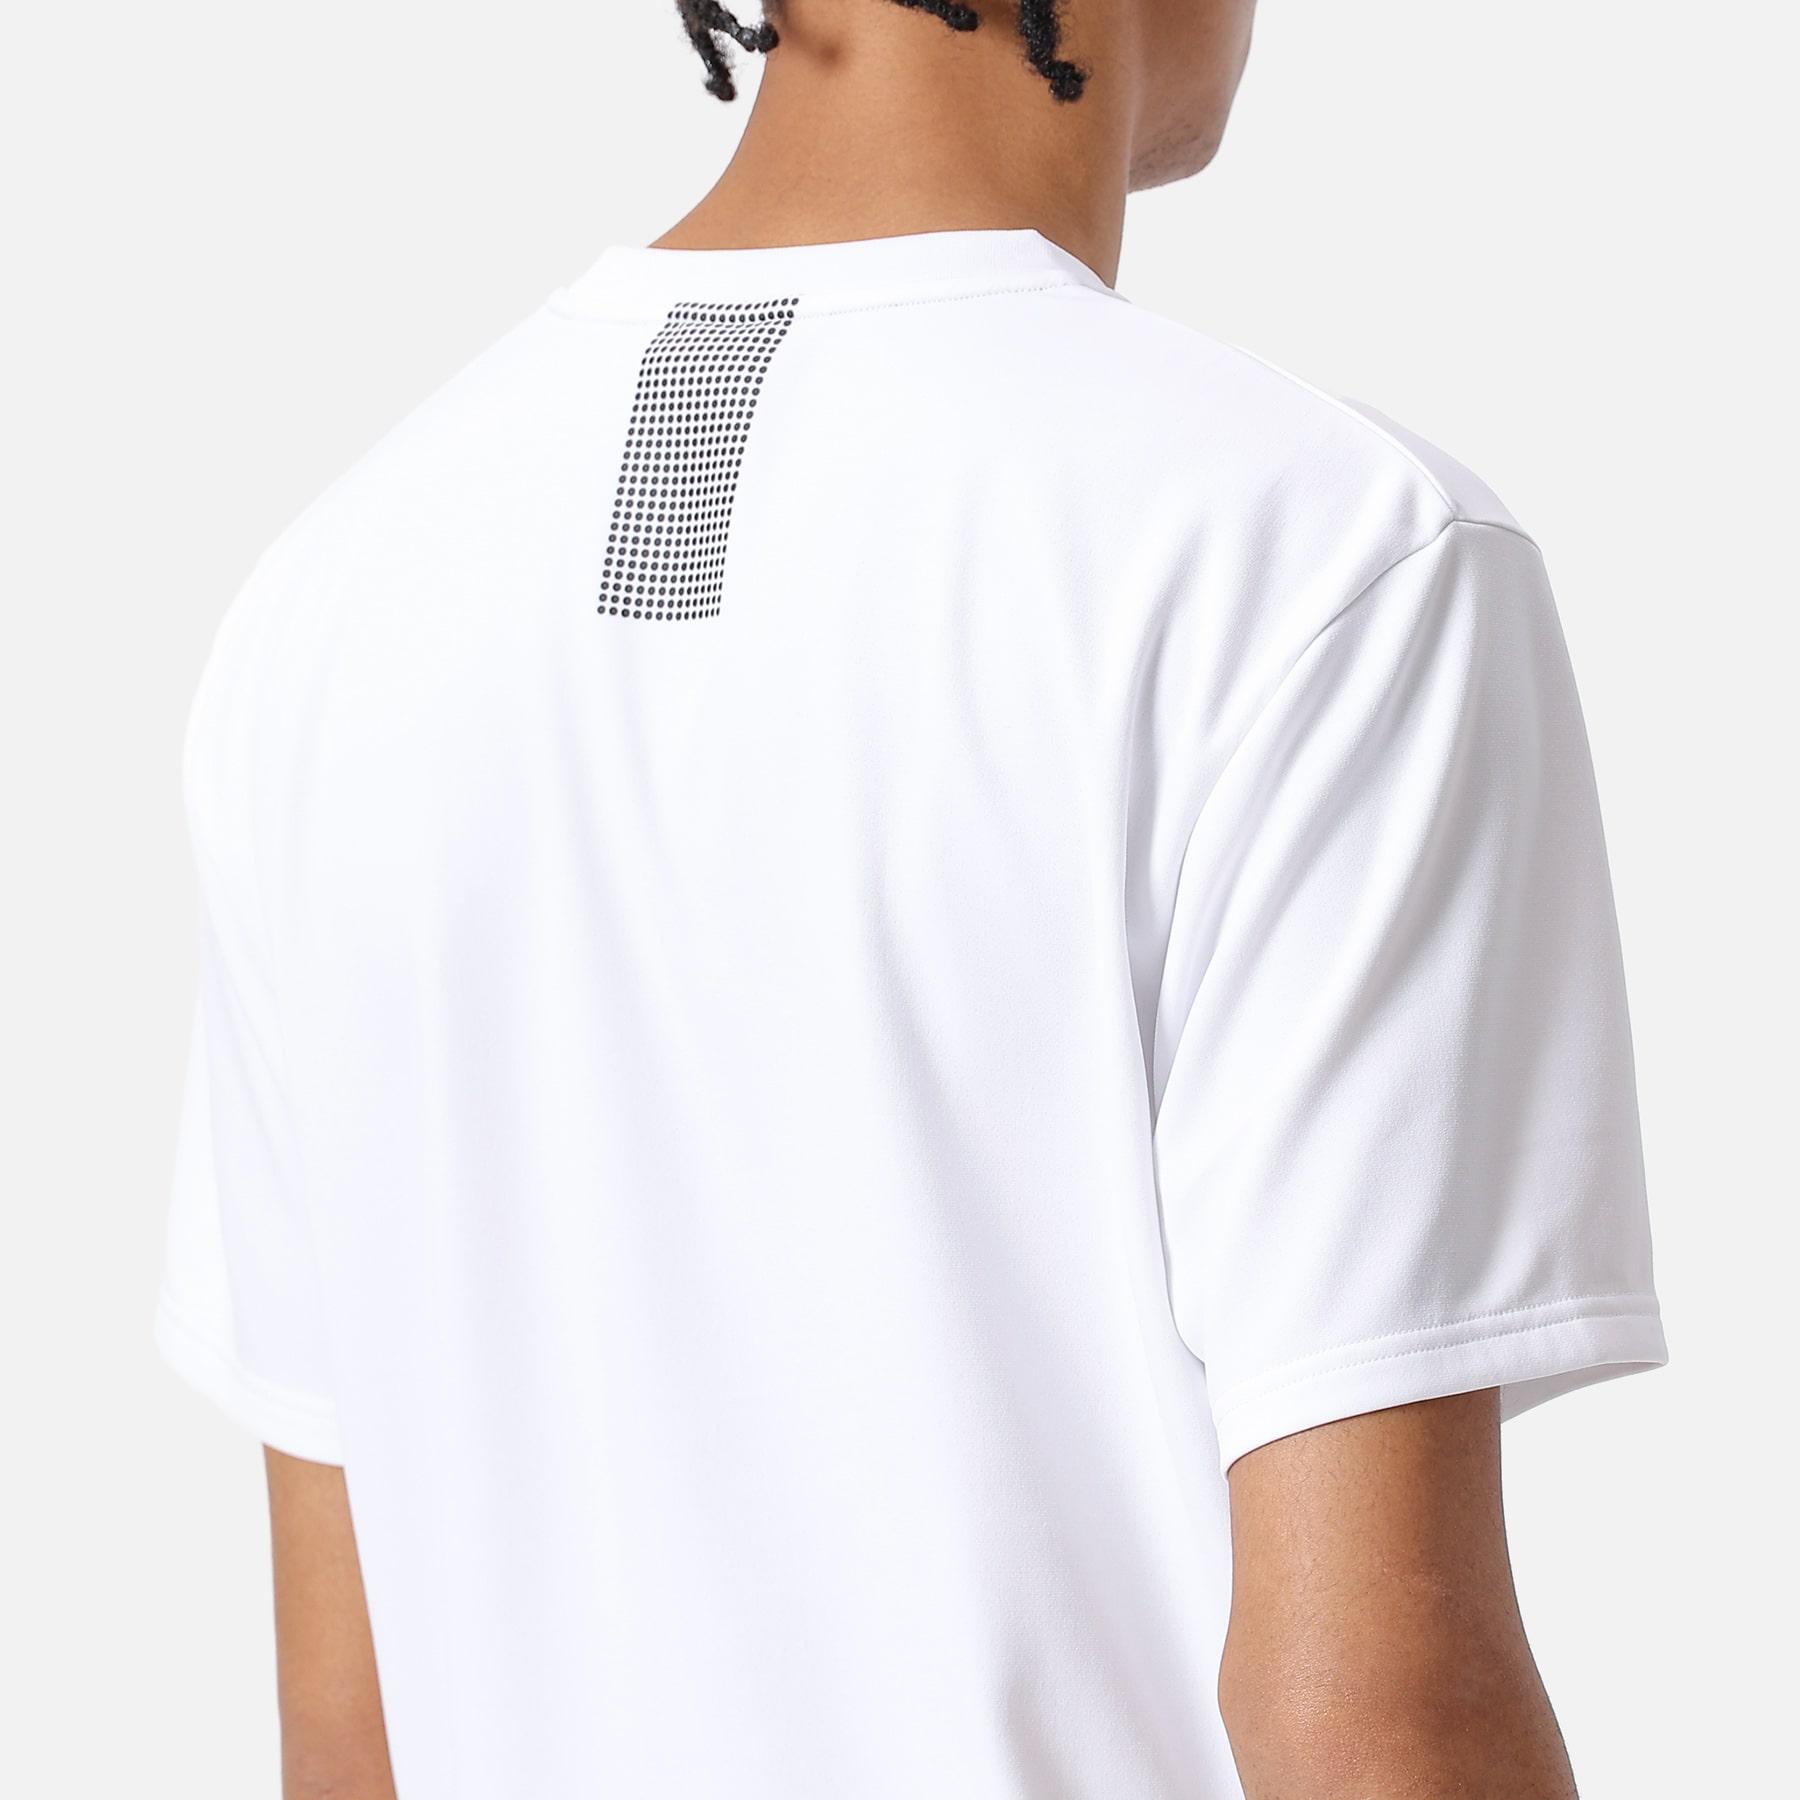 新品　FCRB PRE MATCH TOP XL Bristol ネイビー Tシャツ/カットソー(半袖/袖なし) 全国総量無料で